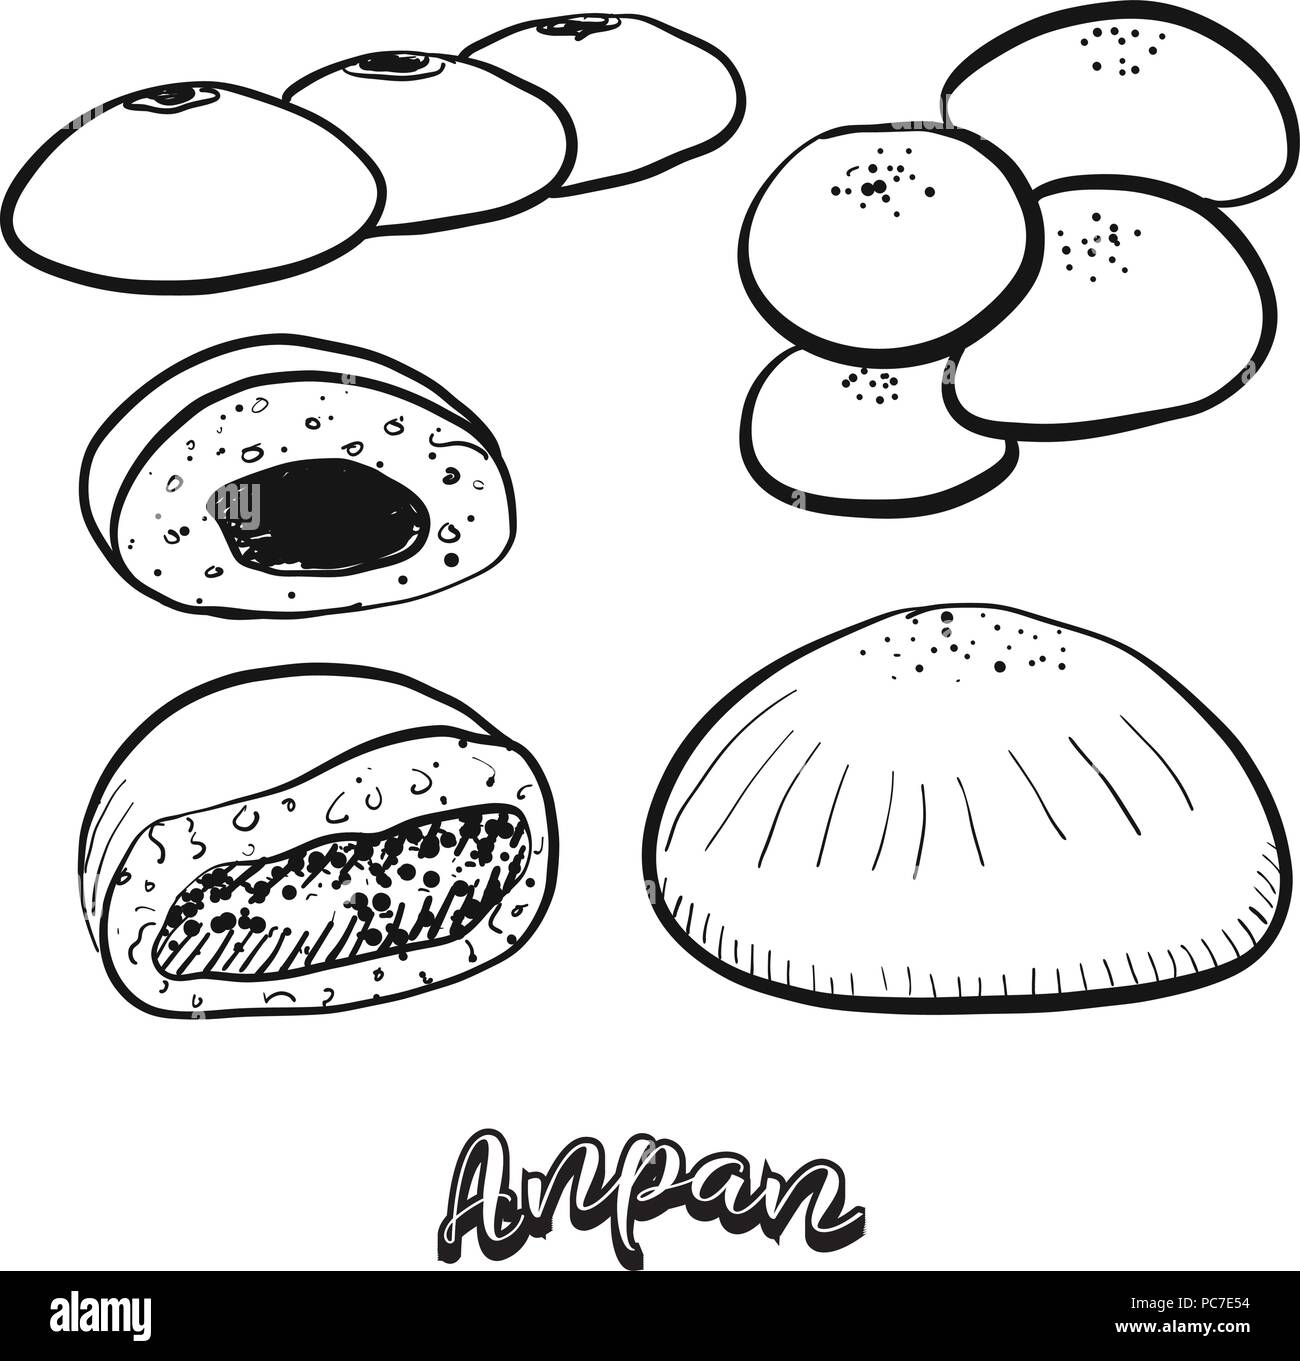 Hand gezeichnete Skizze von Anpan essen. Vektor Zeichnung von süßen Brötchen essen, in der Regel in Japan bekannt. Brot Abbildung Serie. Stock Vektor